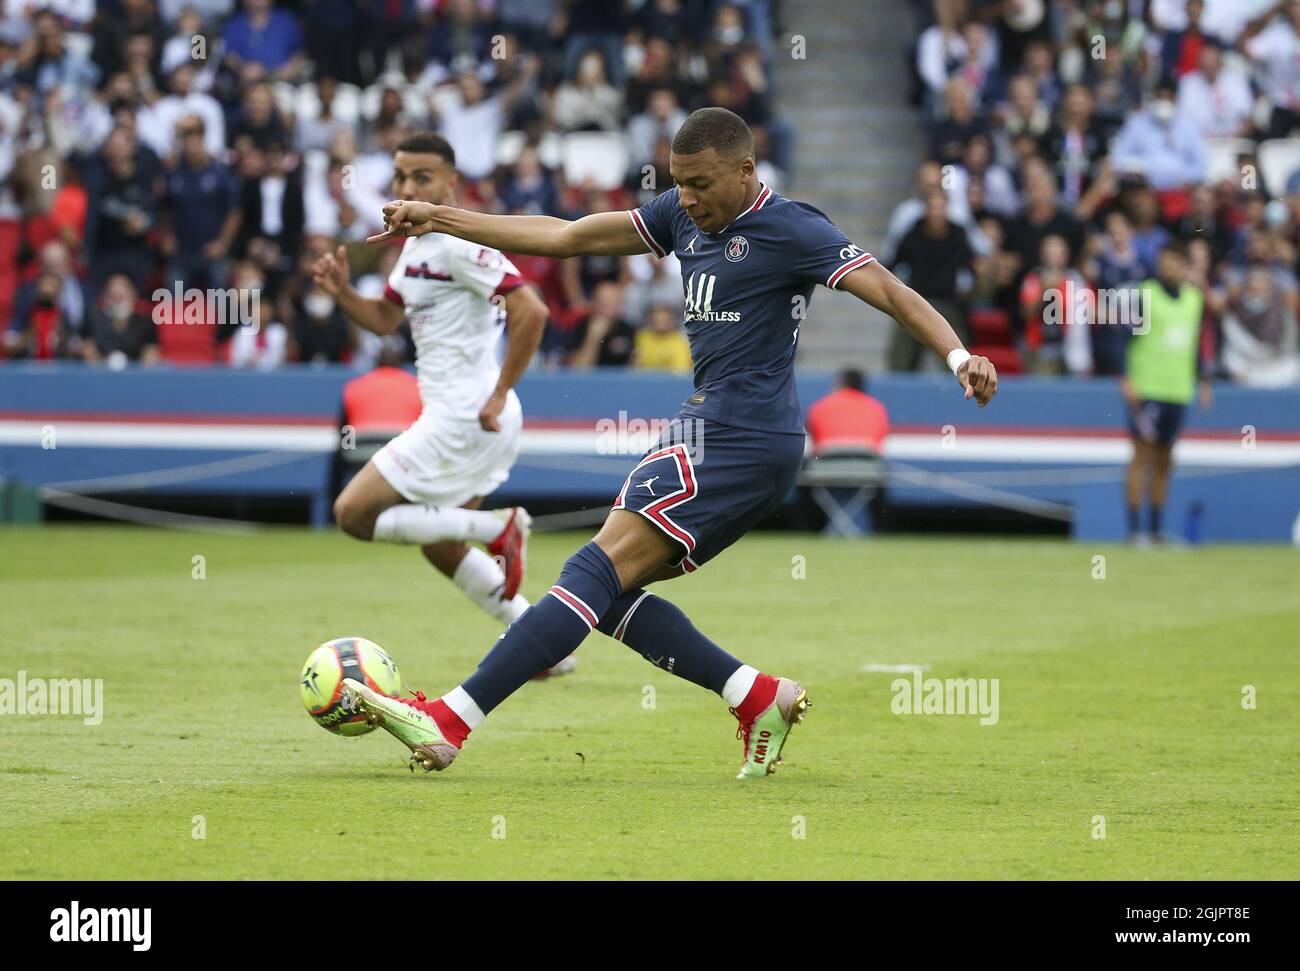 Kylian Mbappe von PSG erzielt sein Tor während des französischen Ligue 1-Fußballspiels zwischen Paris Saint-Germain und Clermont Foot 63 am 11. September 2021 im Stadion Parc des Princes in Paris, Frankreich Stockfoto